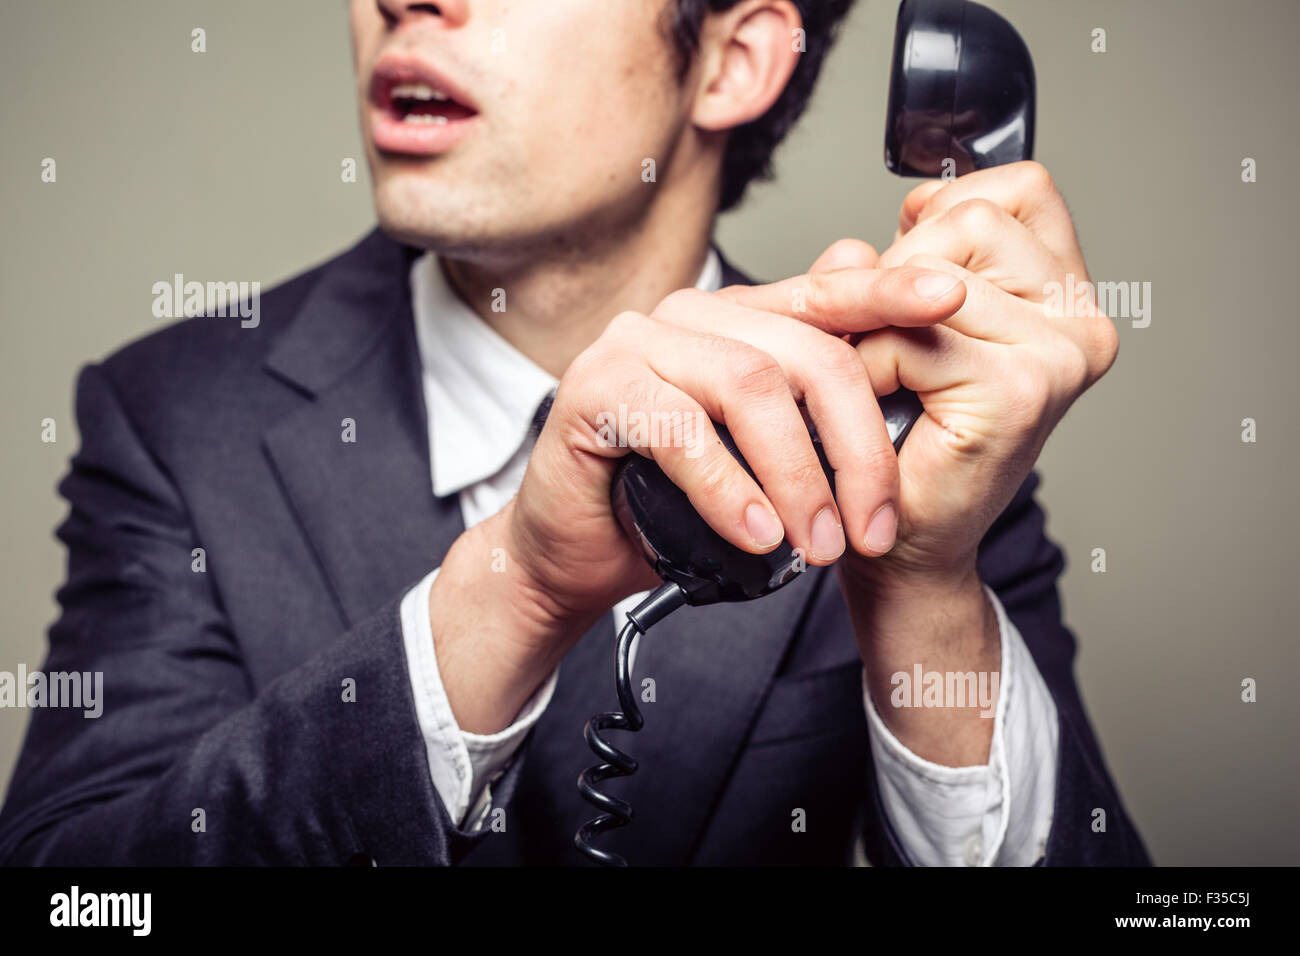 Homme d'affaires est couvrant le téléphone pour parler en privé à quelqu'un dans la pièce Banque D'Images